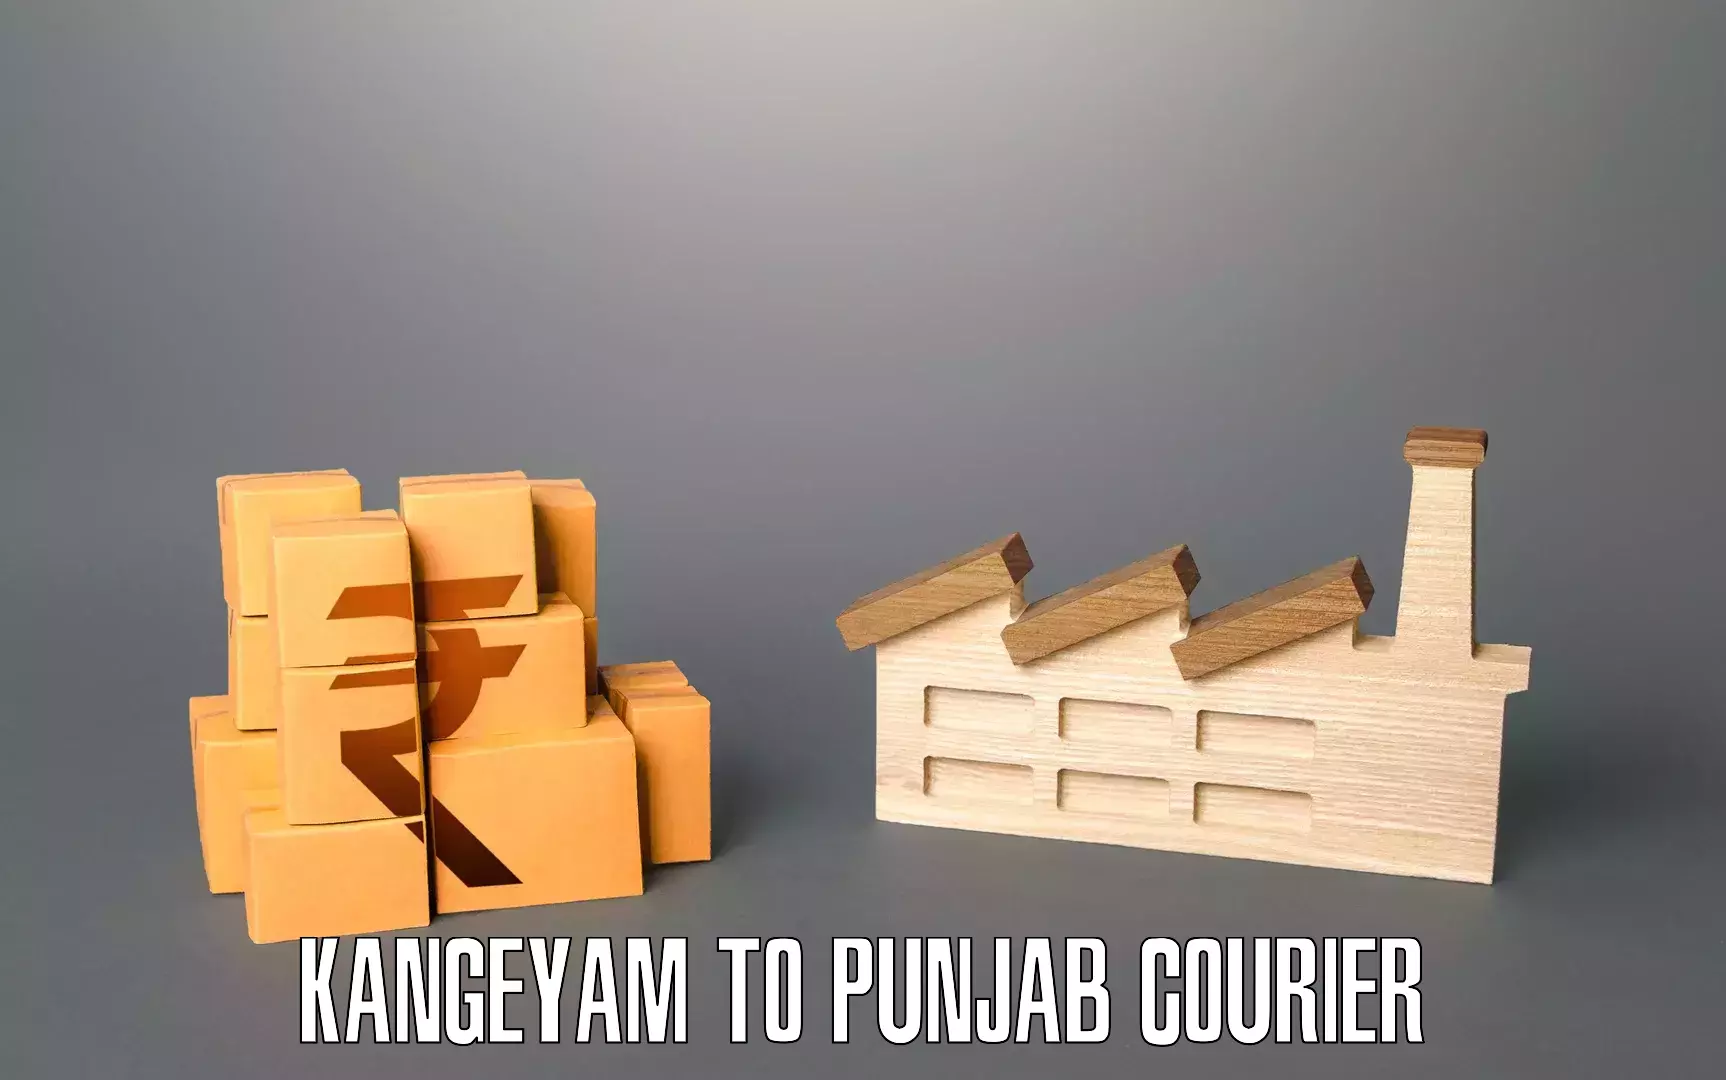 Furniture transport specialists Kangeyam to Punjab